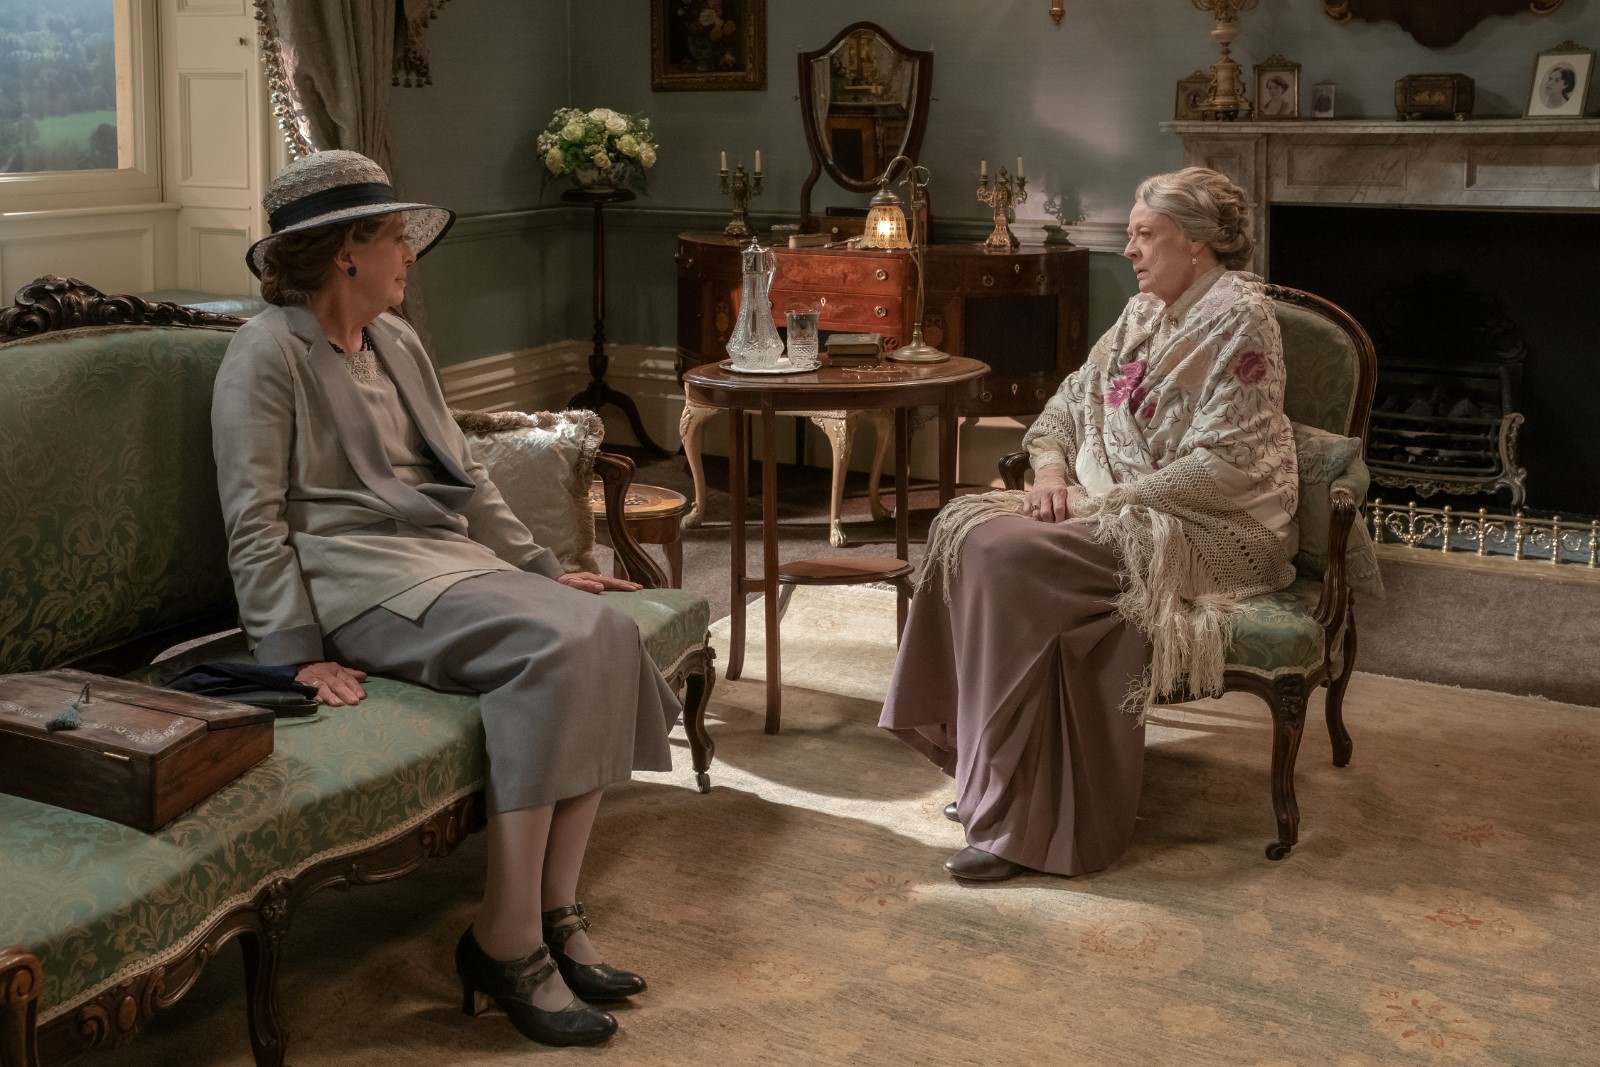 Szenenbild 2 vom Film Downton Abbey 2: Eine neue Ära 